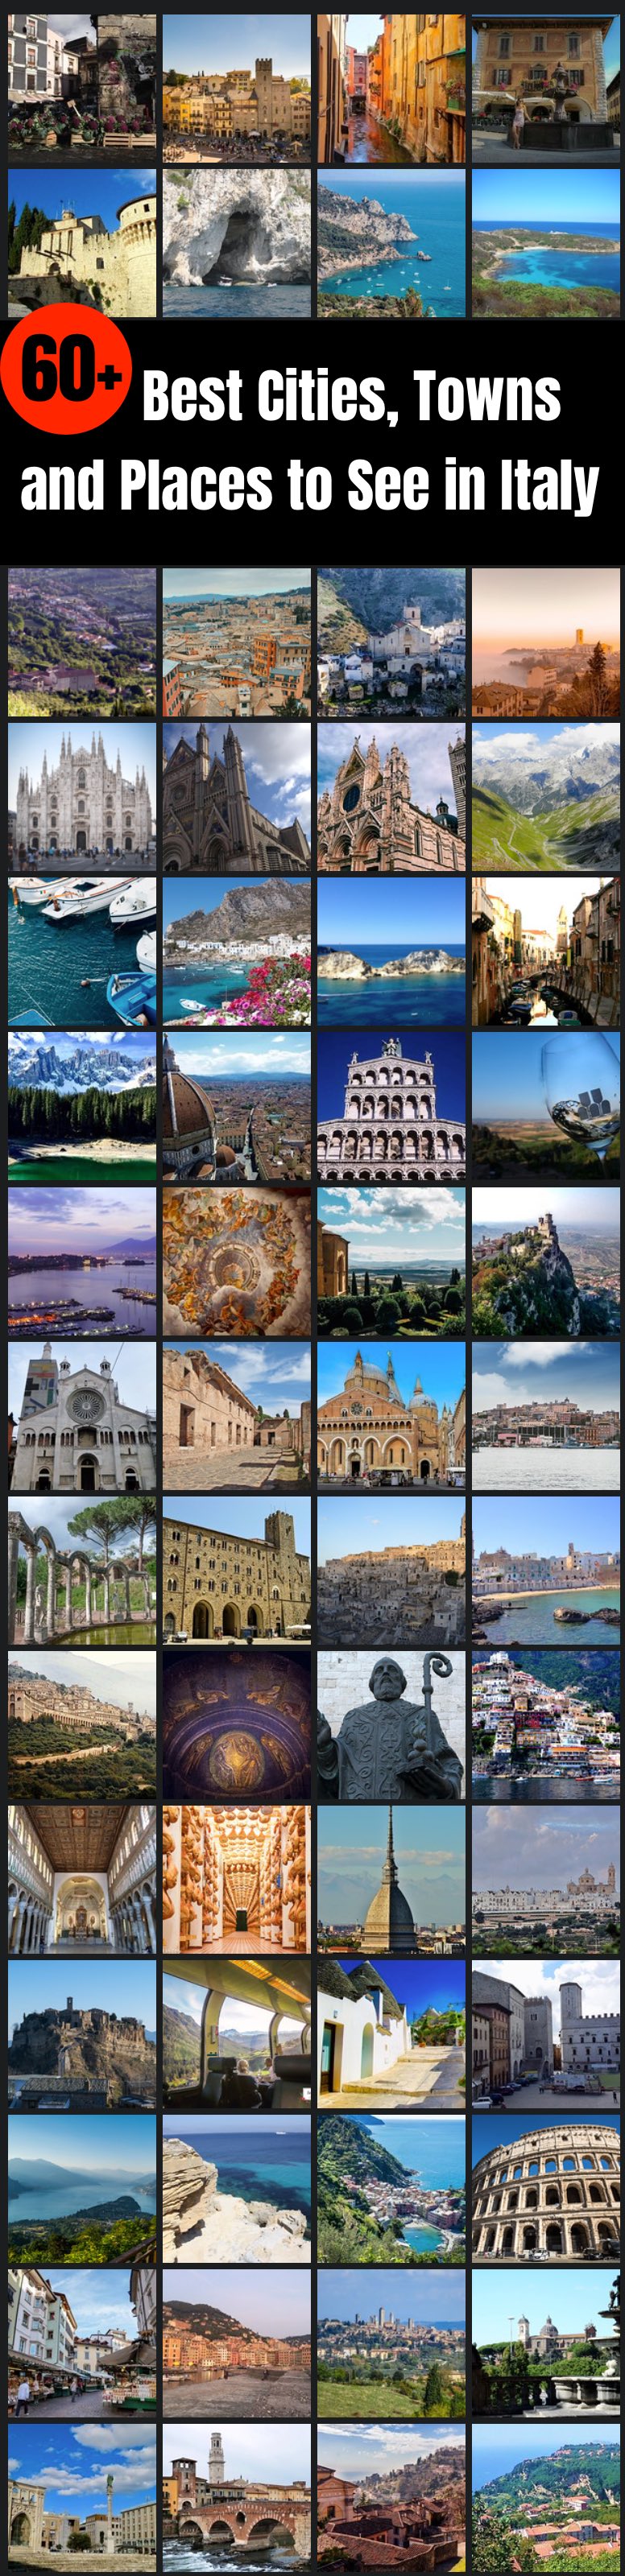 Oltre 60 migliori città, città e luoghi da vedere in Italia